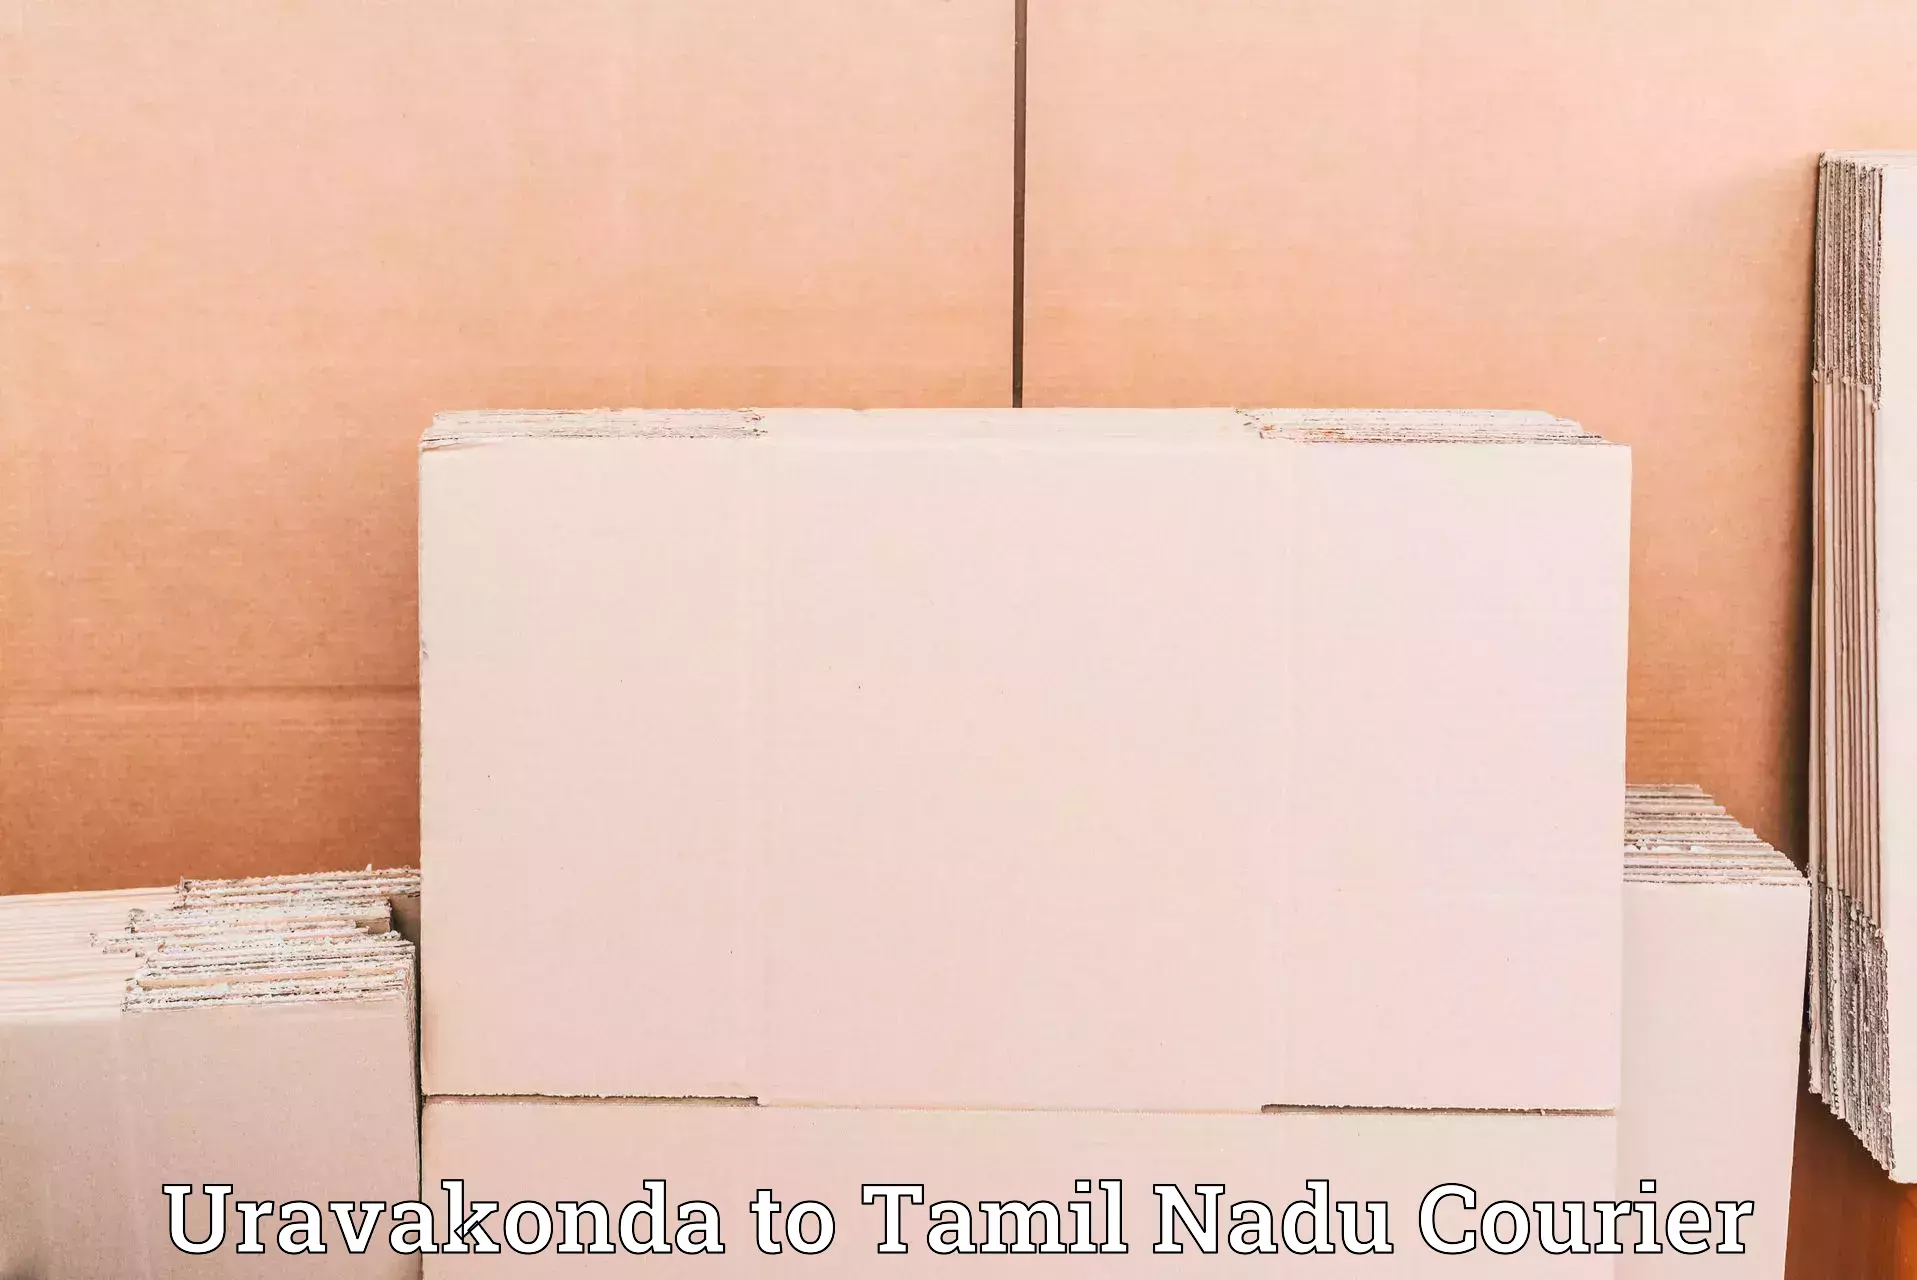 Multi-national courier services Uravakonda to Chidambaram